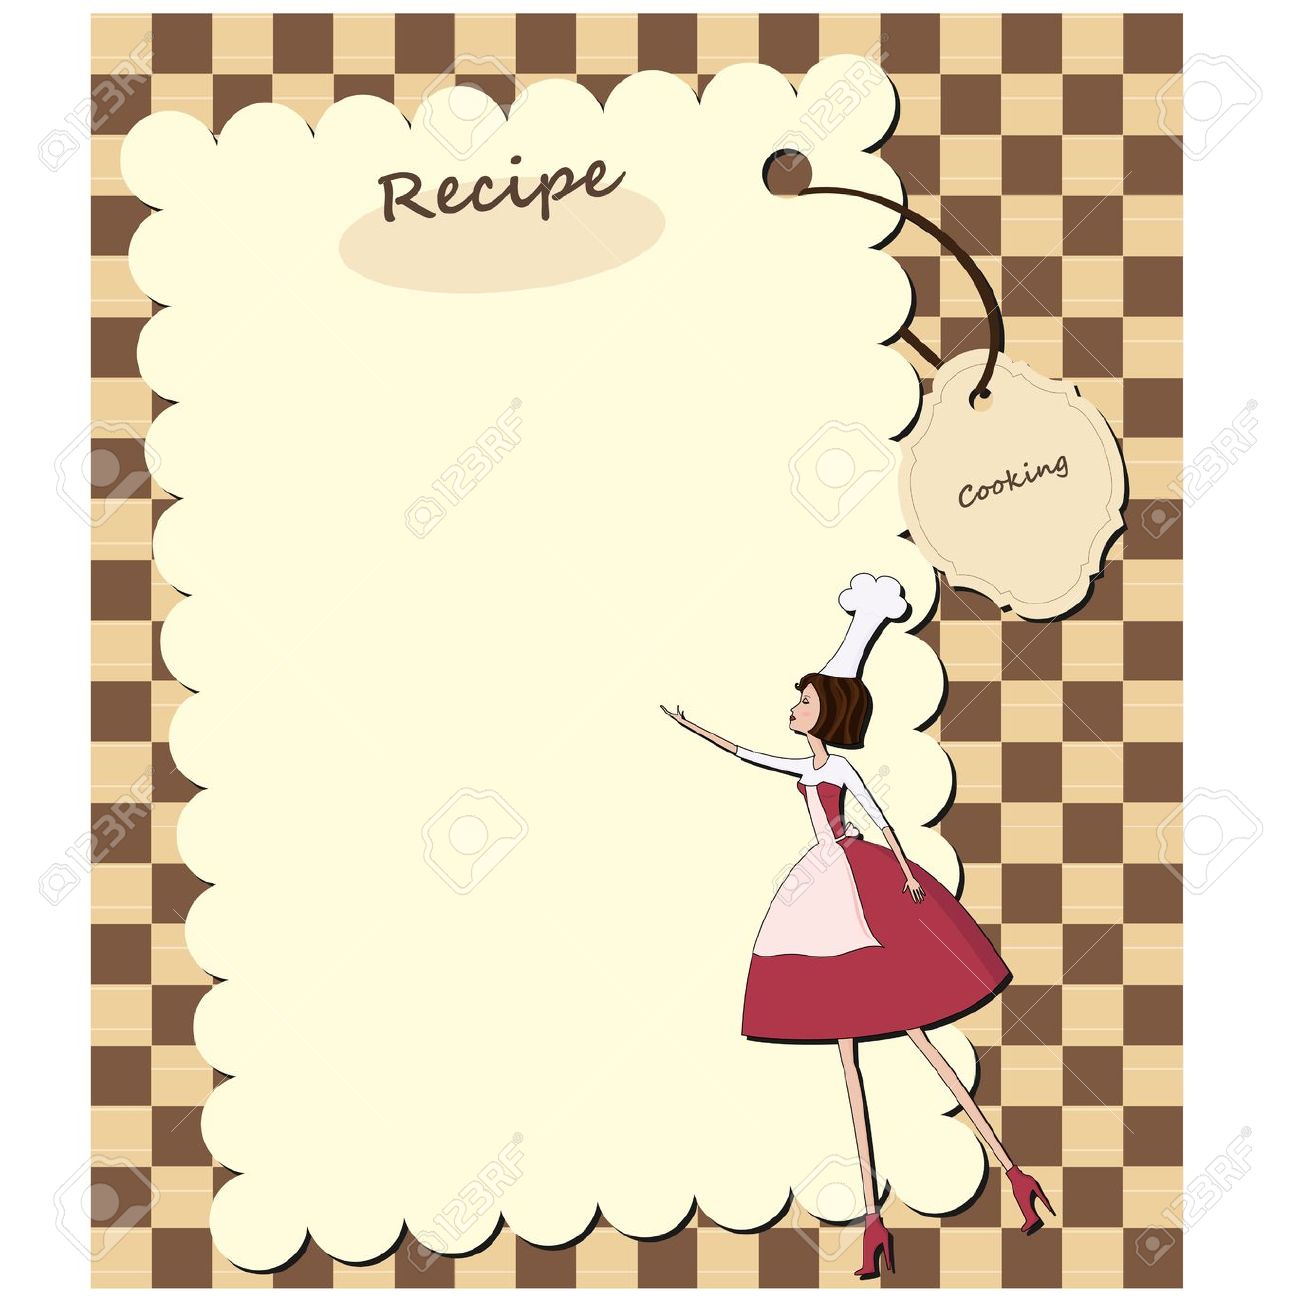 Cute clipart recipe card